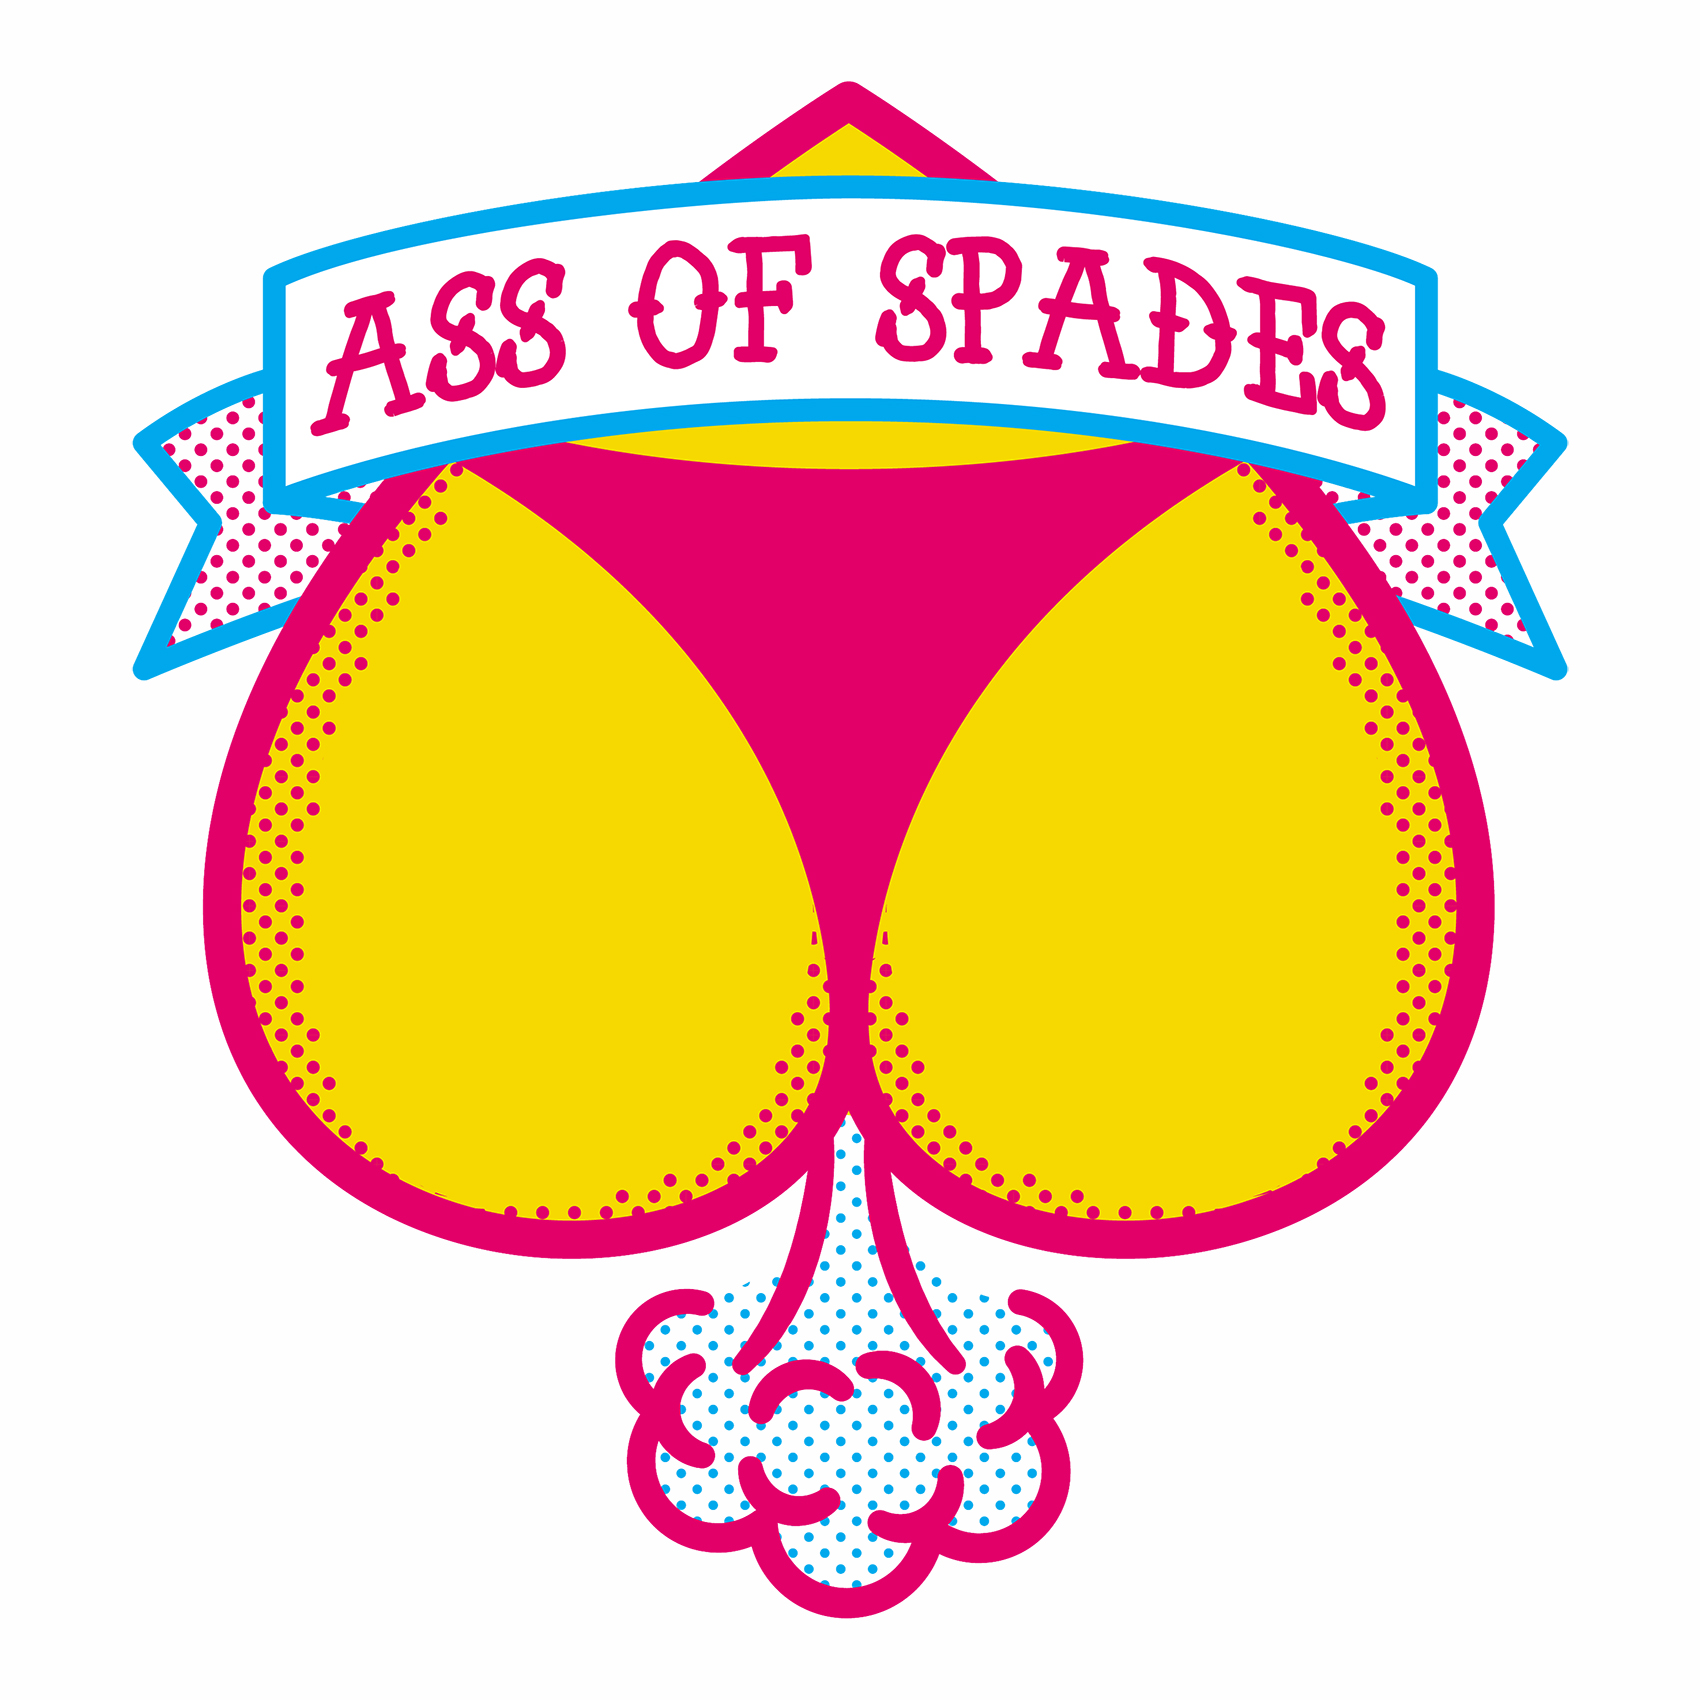 Ass of Spades